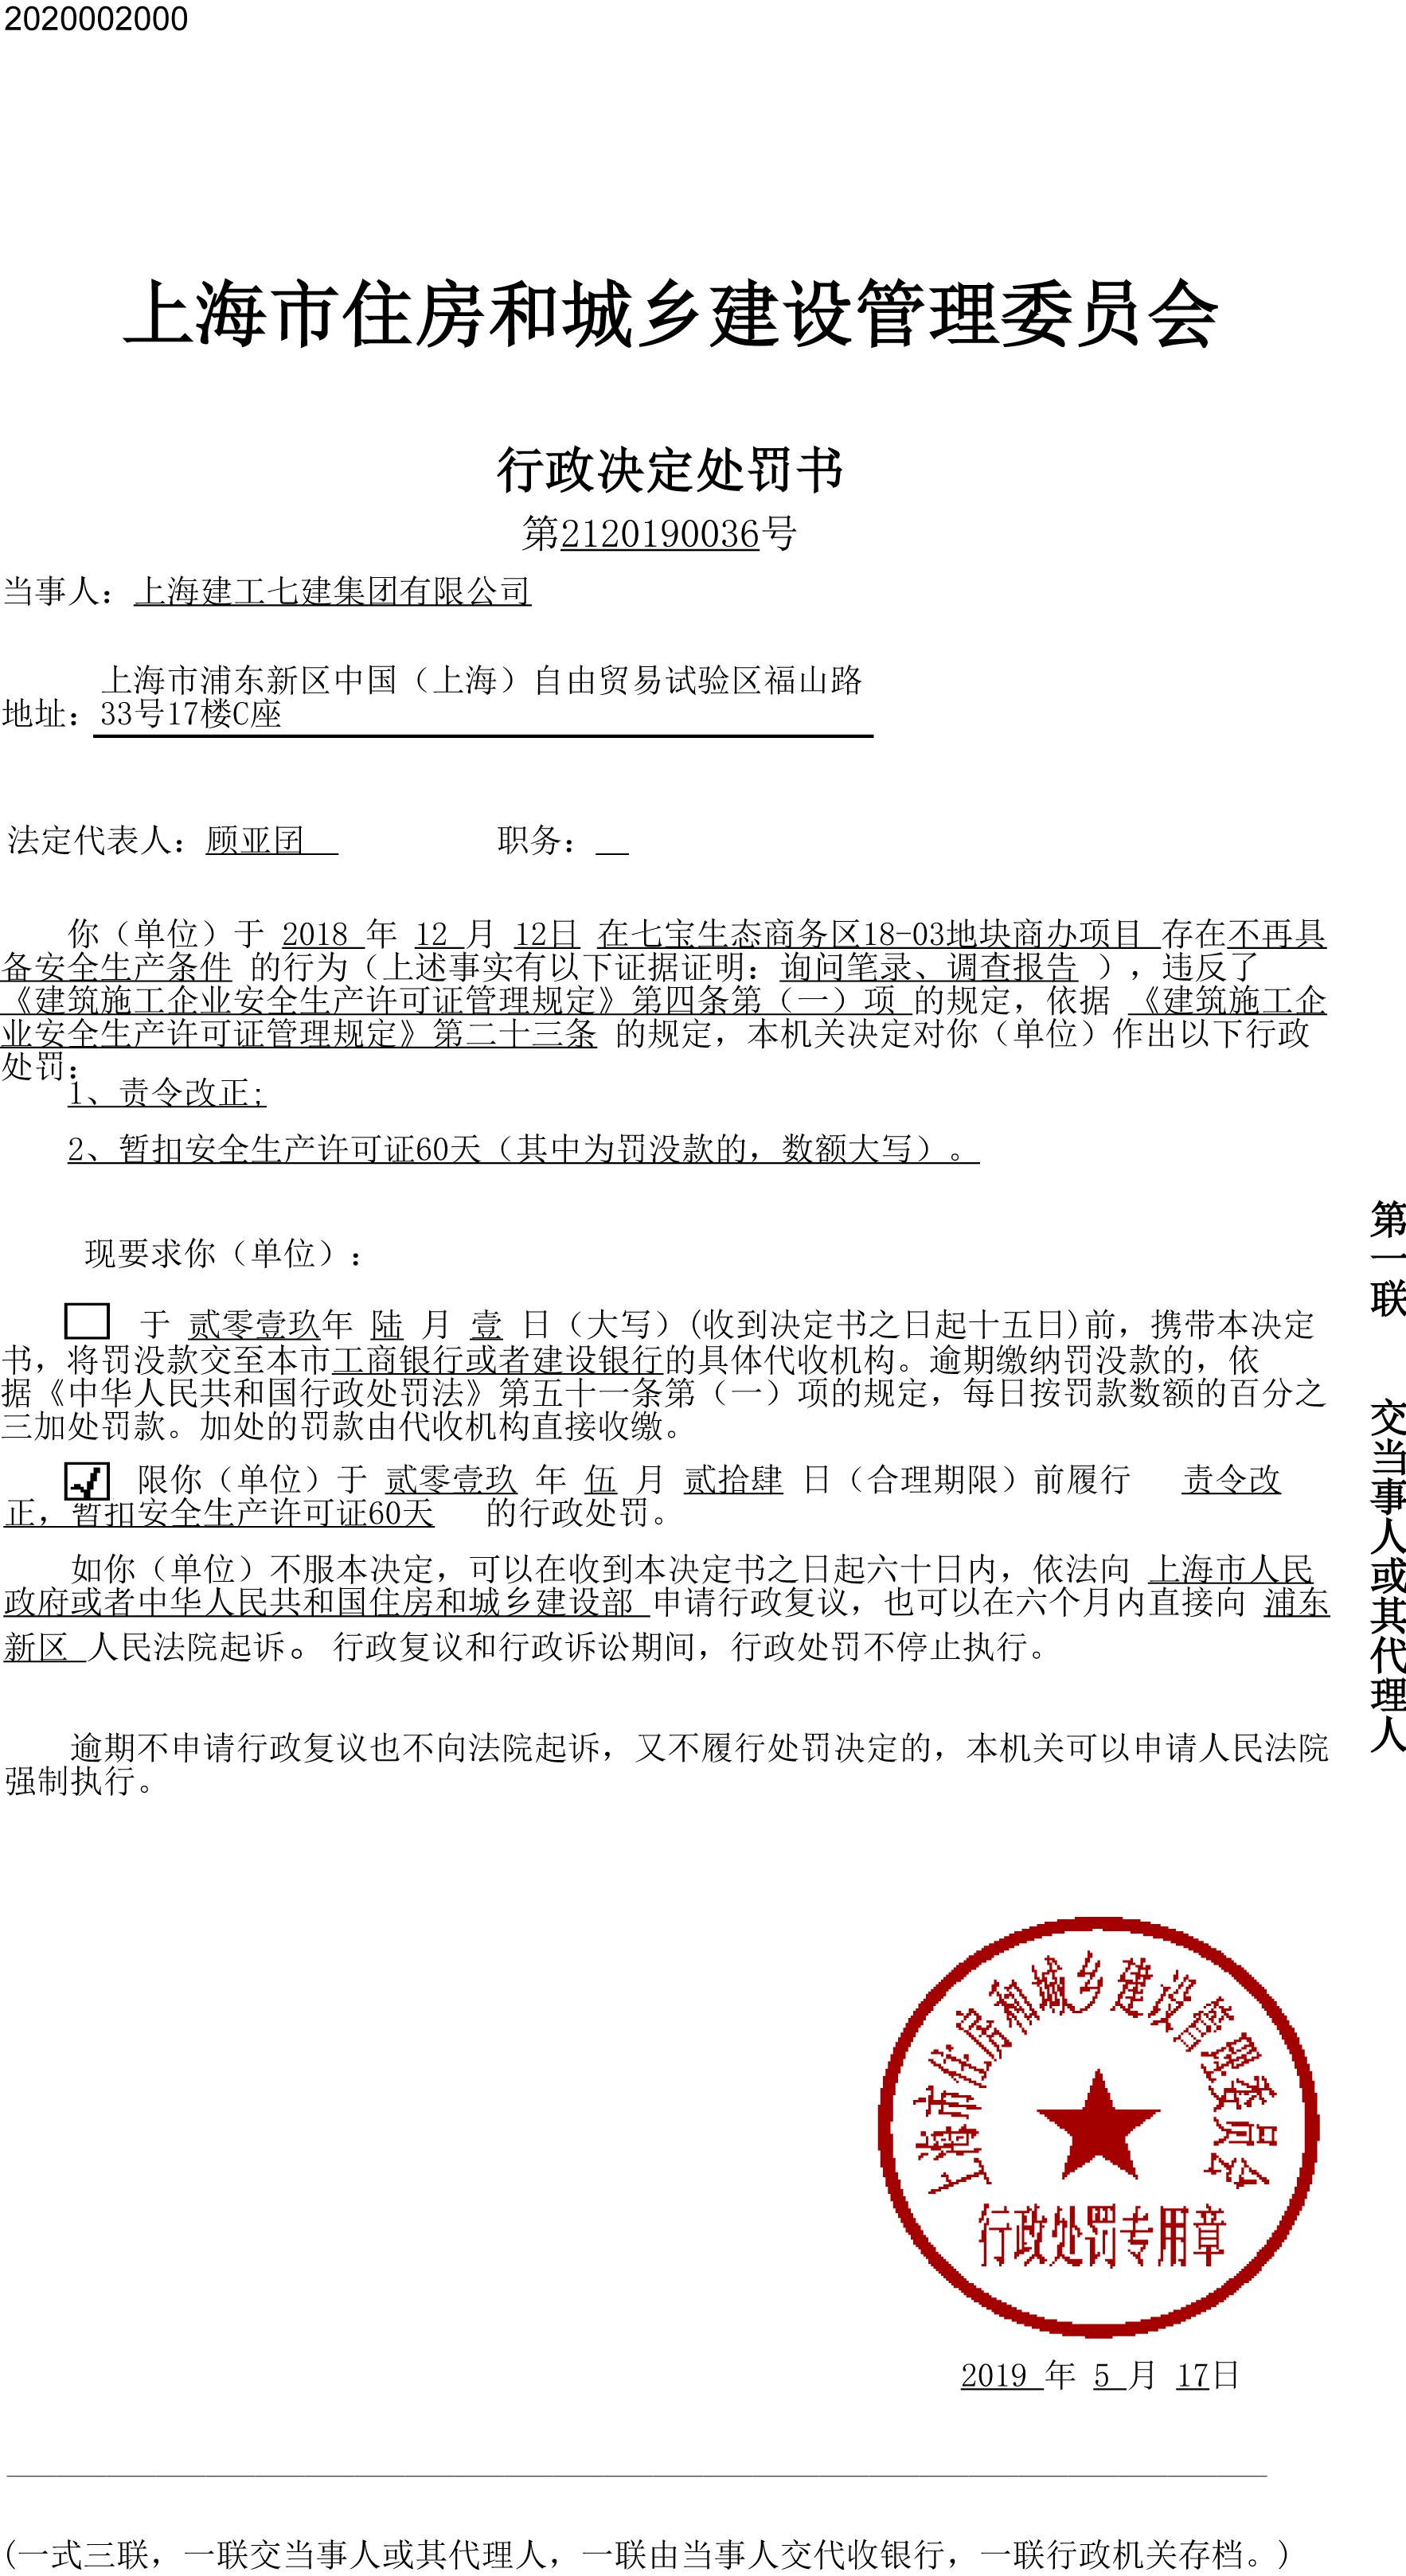 上海建工七建集团有限公司七宝生态商务区项目存安全隐患被处罚